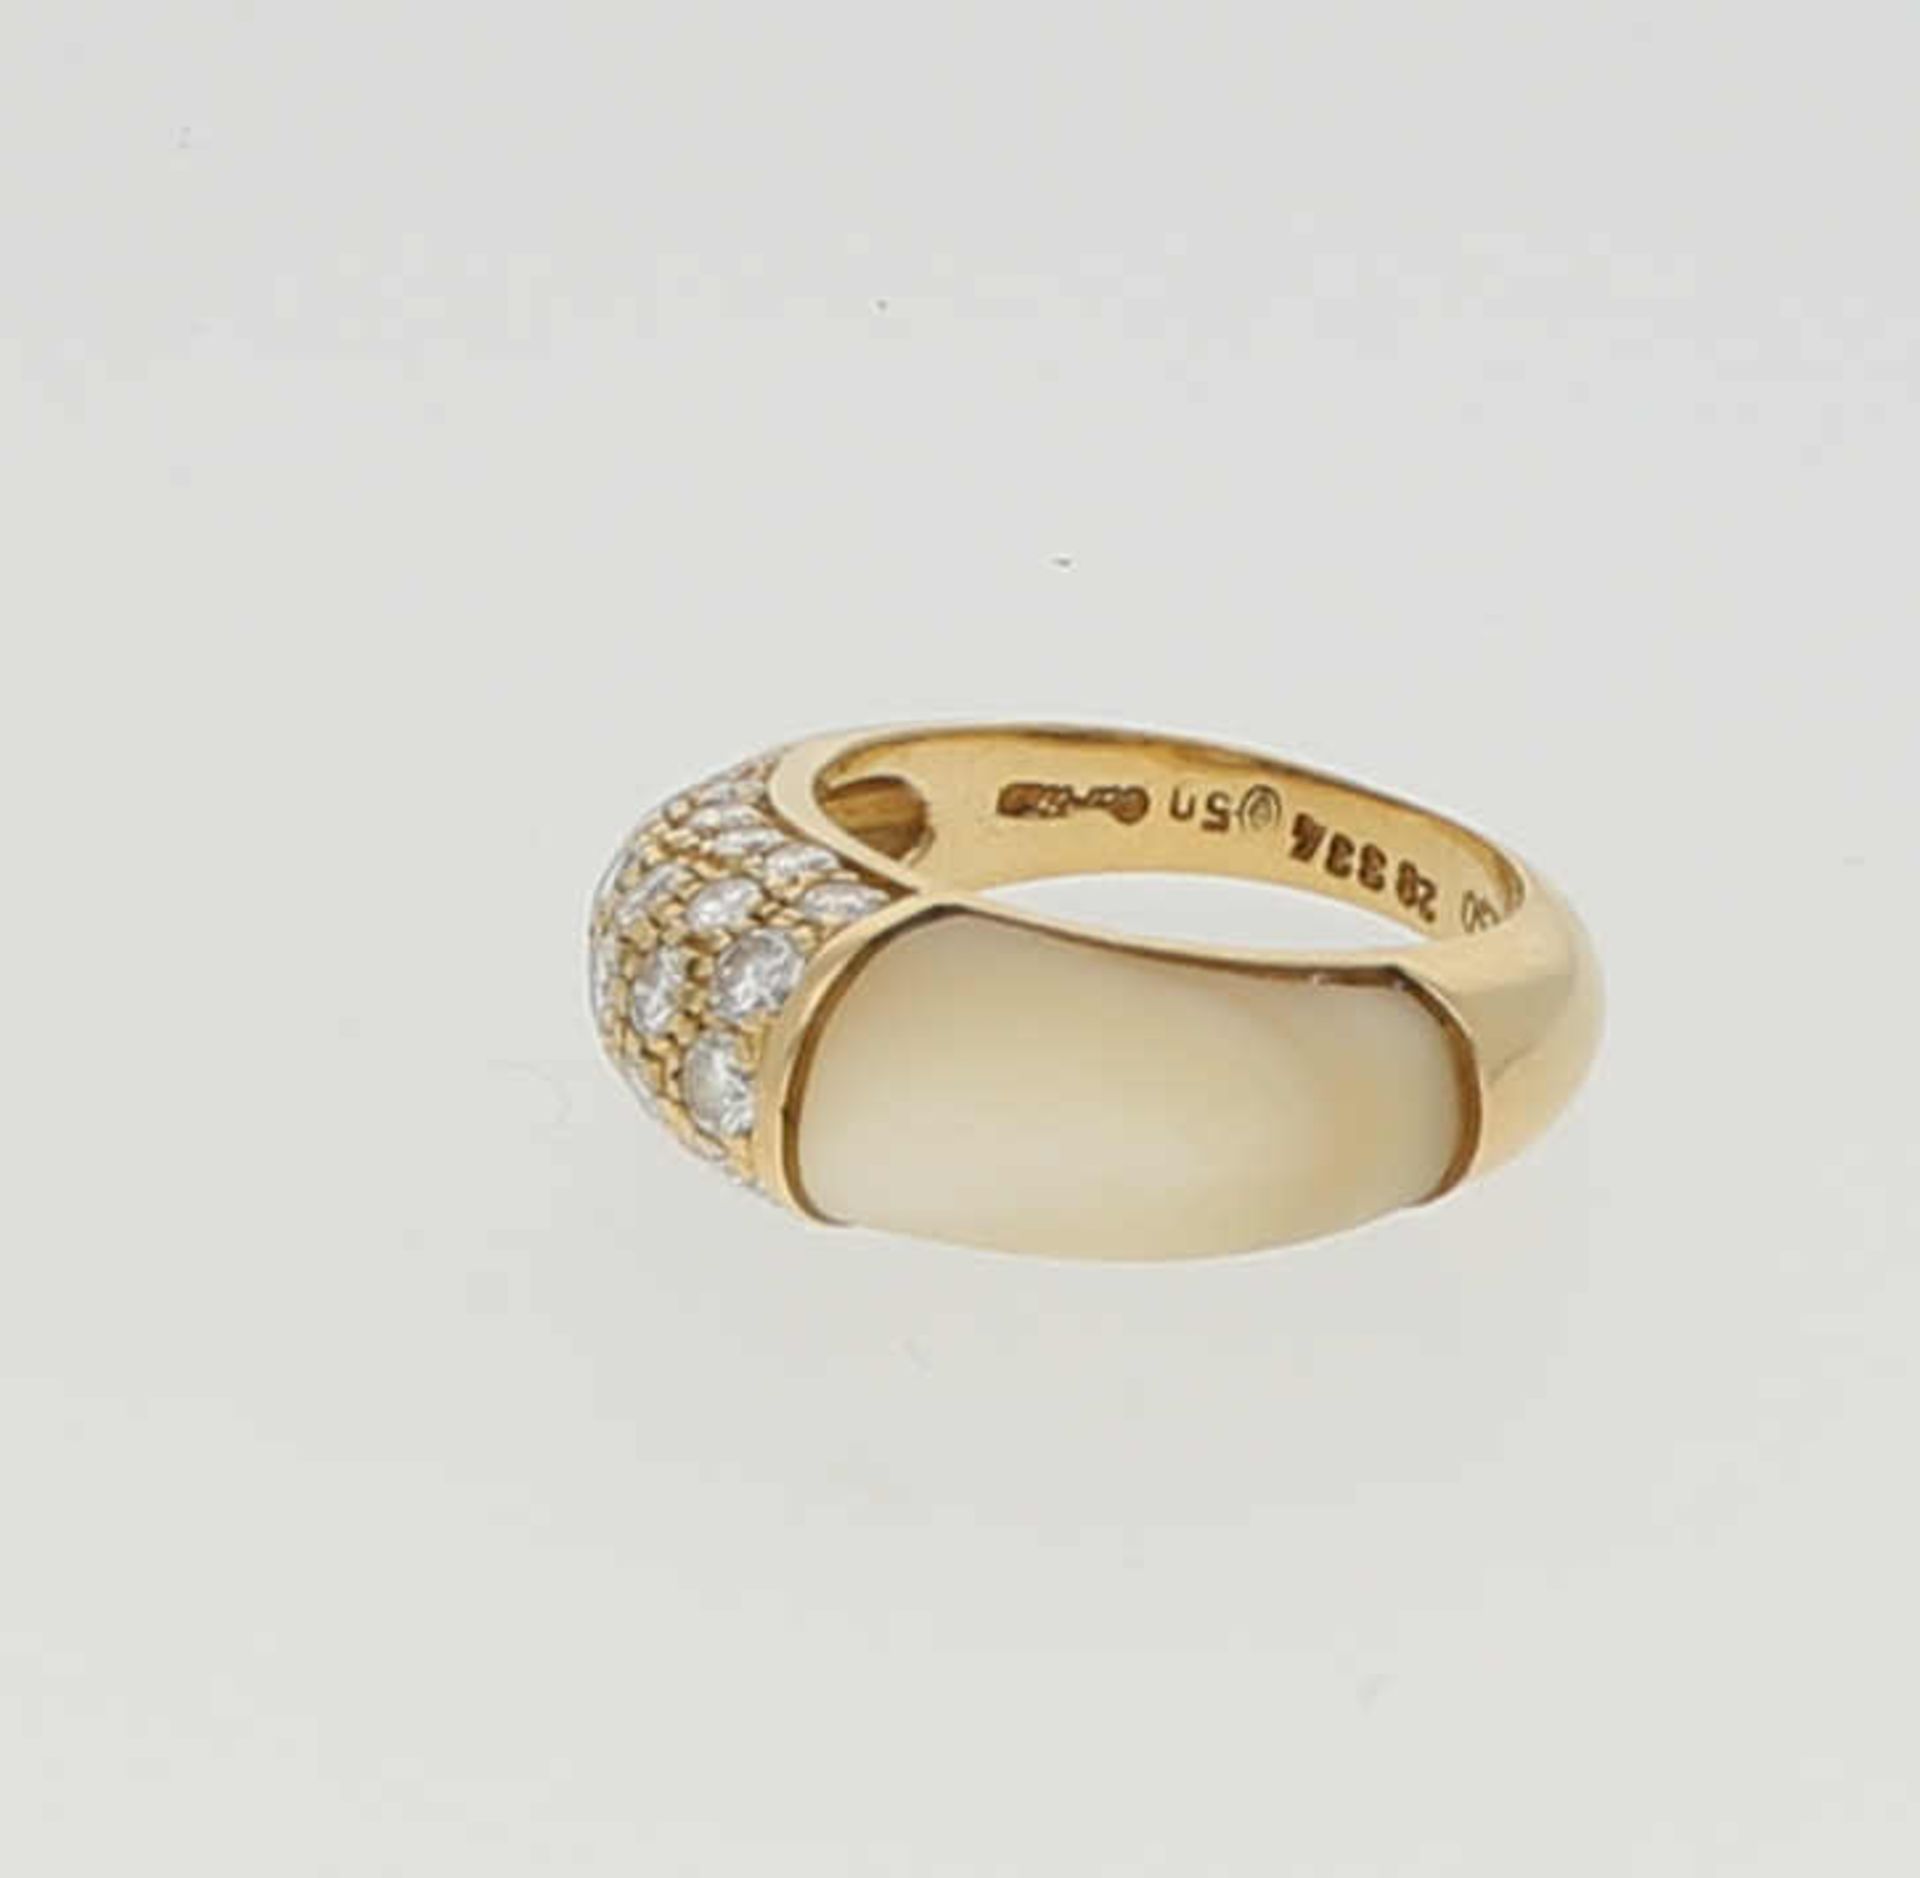 CARTIER Ring Cartier Vintage Ring aus der "Mimi" Kollektion mit Perlmutt und Diamanten von zus. - Bild 2 aus 2